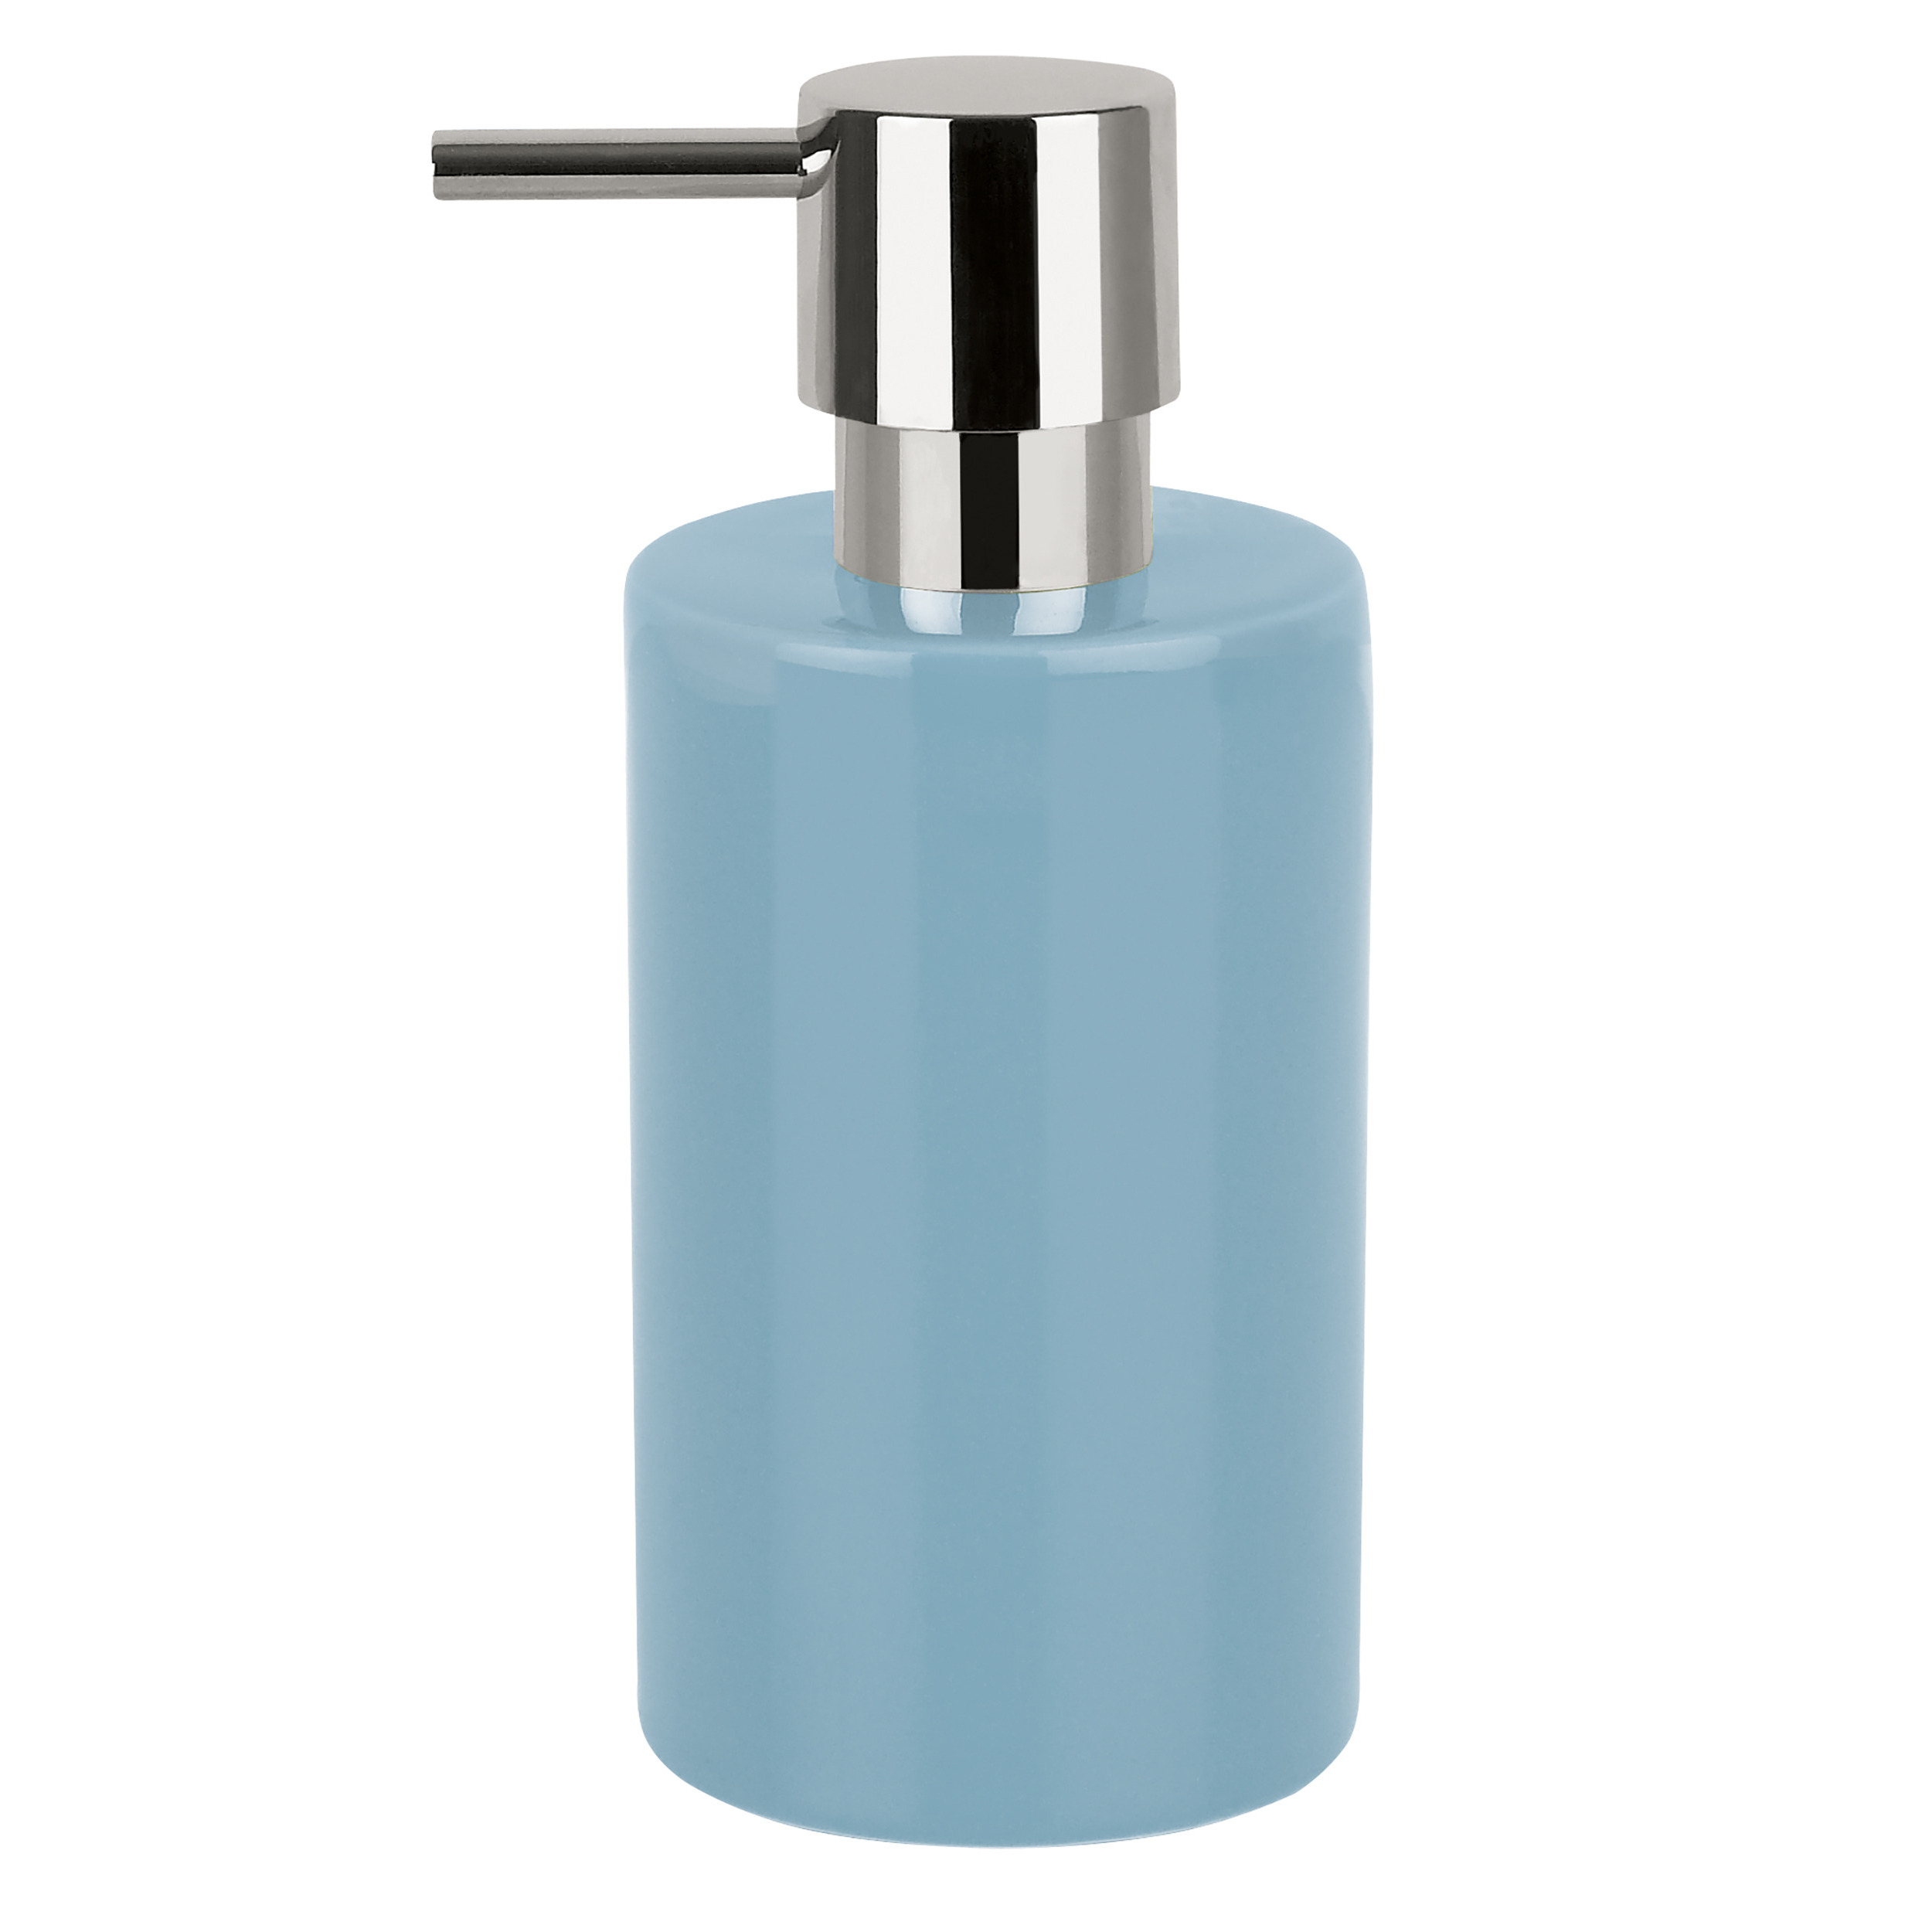 Luxe zeeppompje-dispenser Sienna glans lichtblauw porselein 16 x 7 cm 300 ml